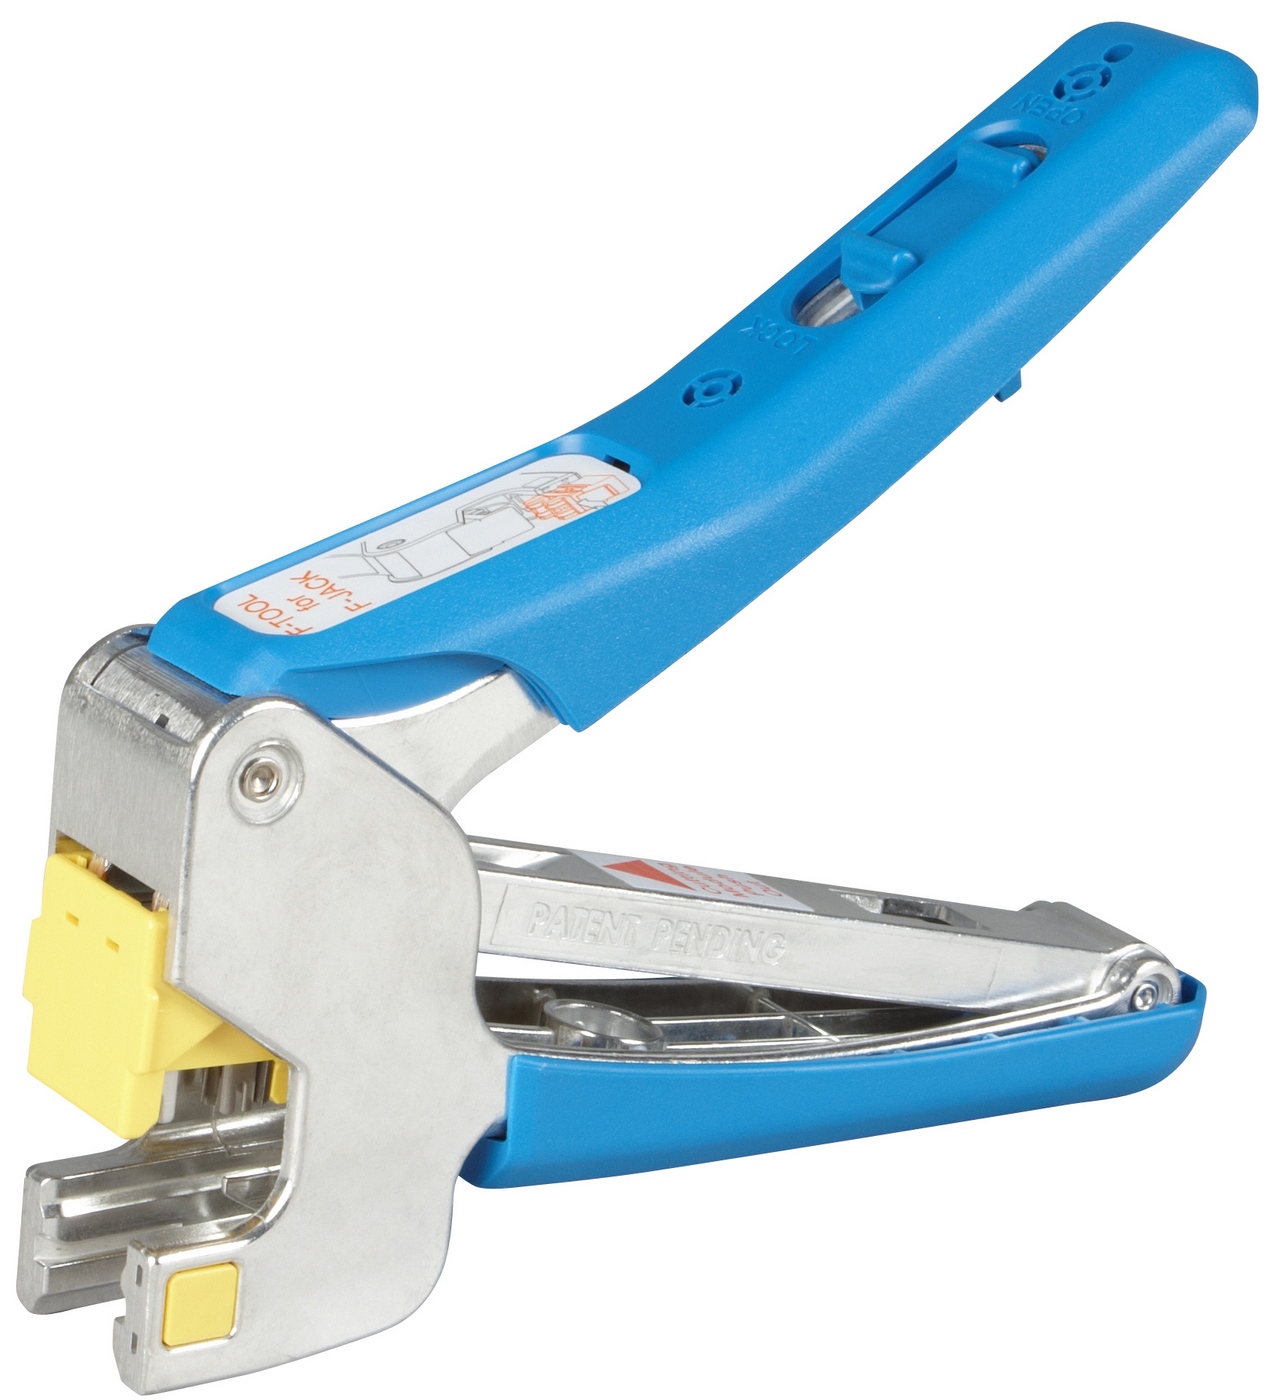 SOLARIX SXKJ-NA-BU Cutting pliers for Keystone SXKJ-x-x-BK-NA